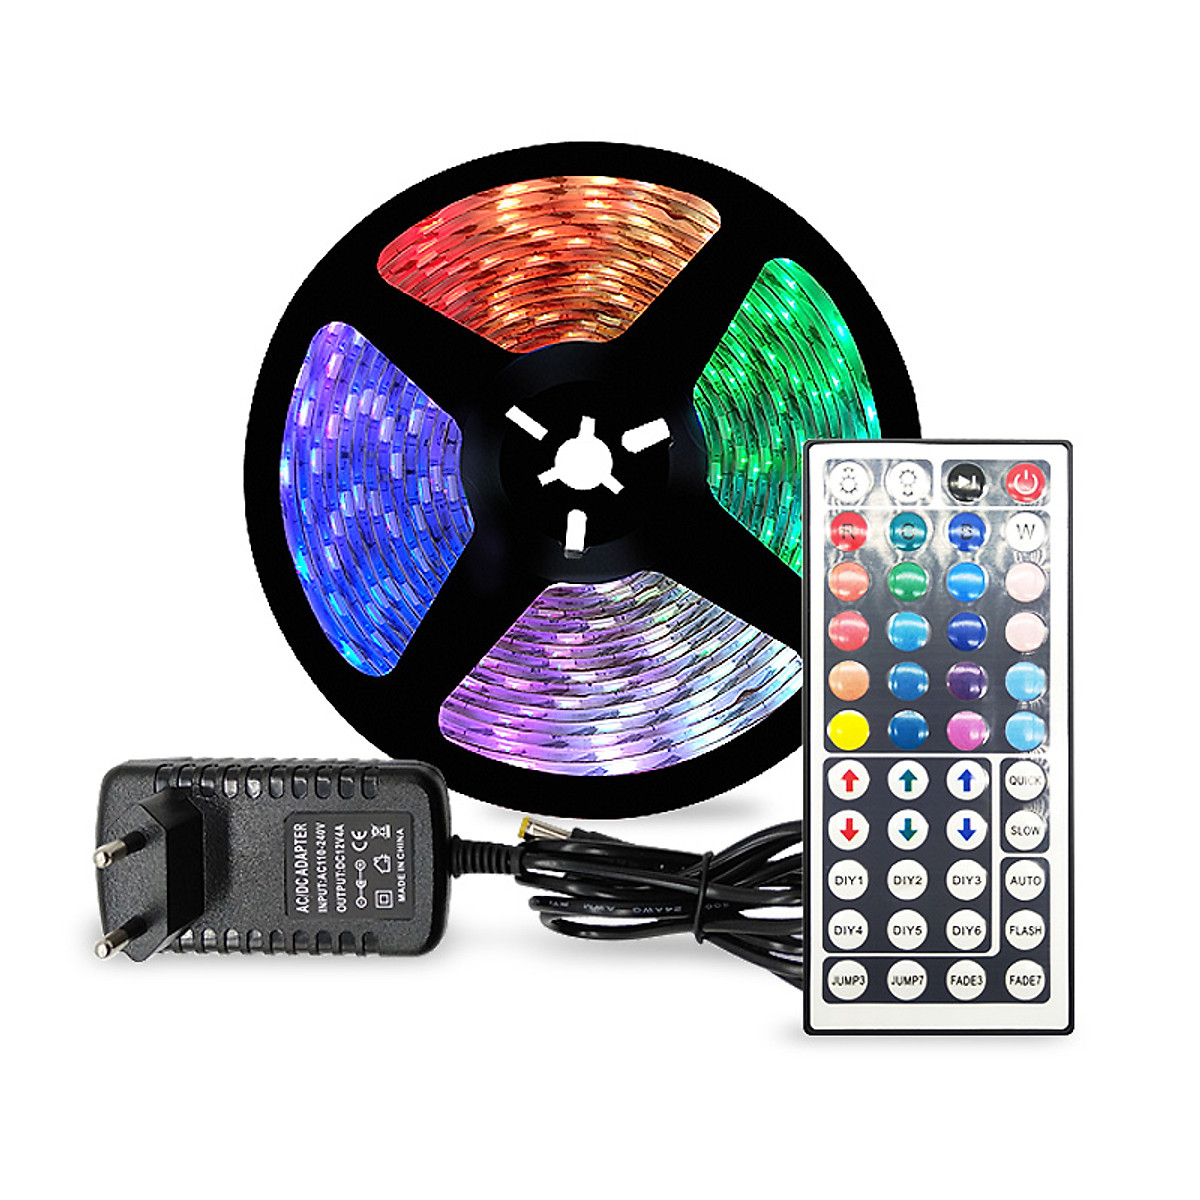 Cuộn Đèn LED Trang Trí Quấn Cây RGB Siêu Sáng, Dài 5M Kèm Remote 44 Phím